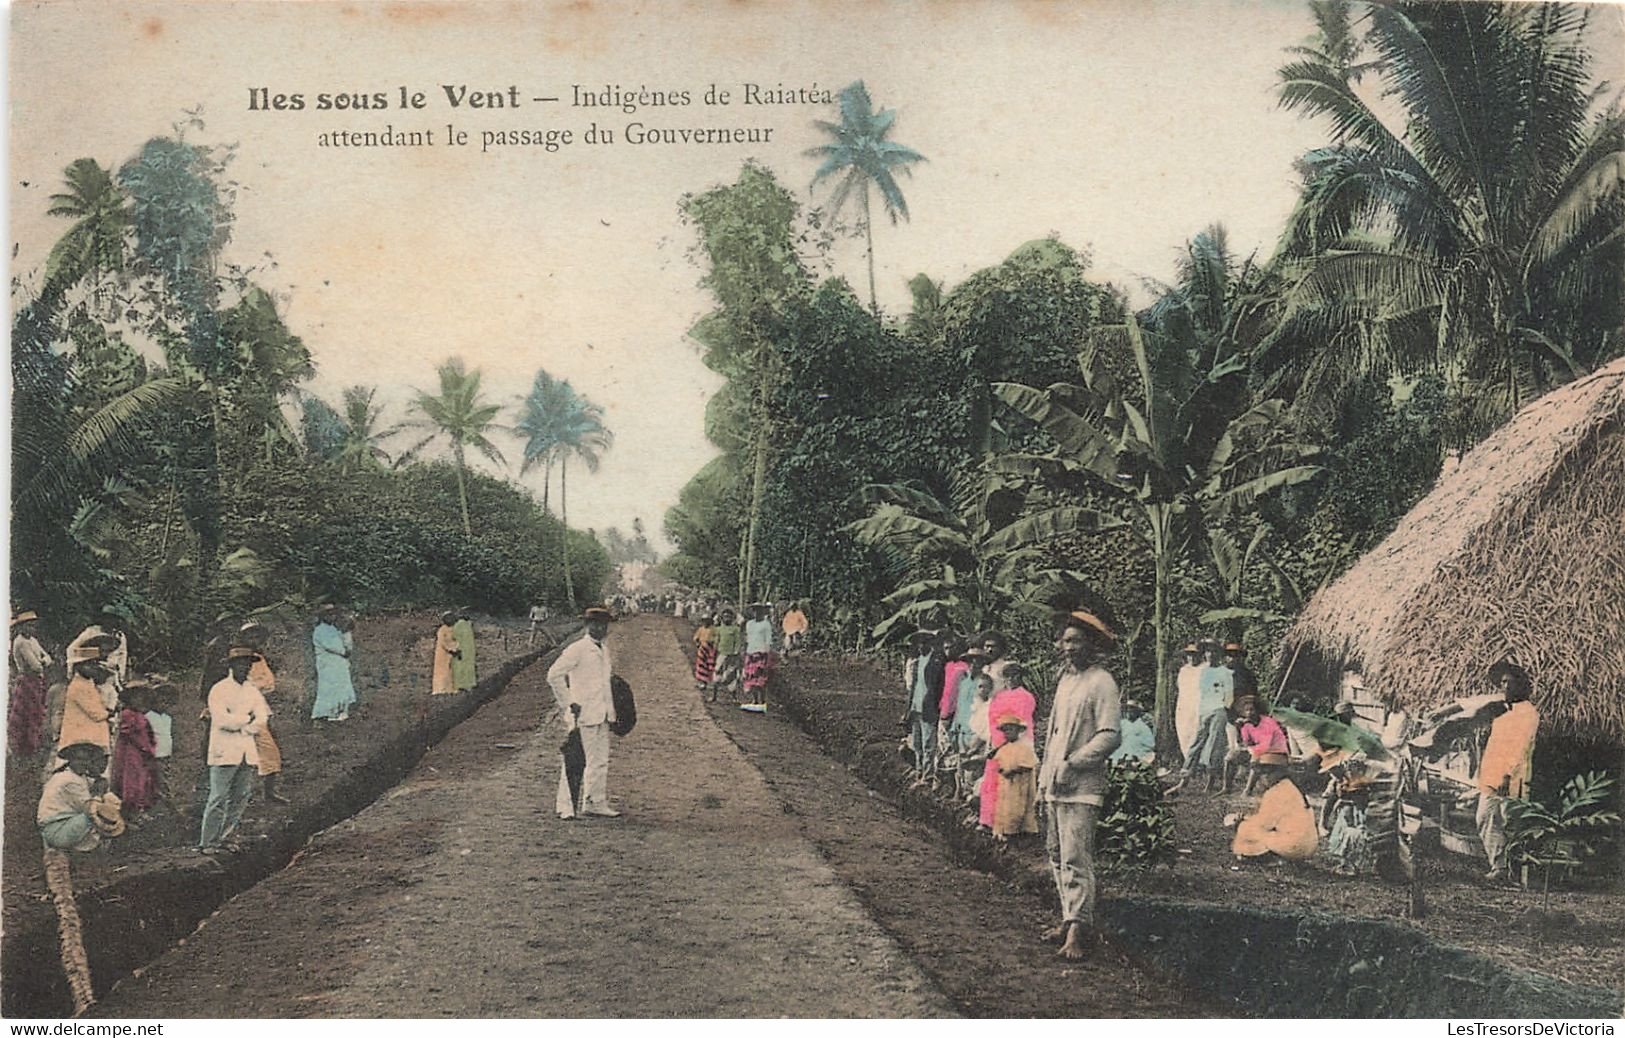 Tahiti - Iles Sous Le Vent - Indigènes De Raiatéa Attendant Le Passage Du Gouverneur - Colorisé - Carte Postale Ancienne - Tahiti